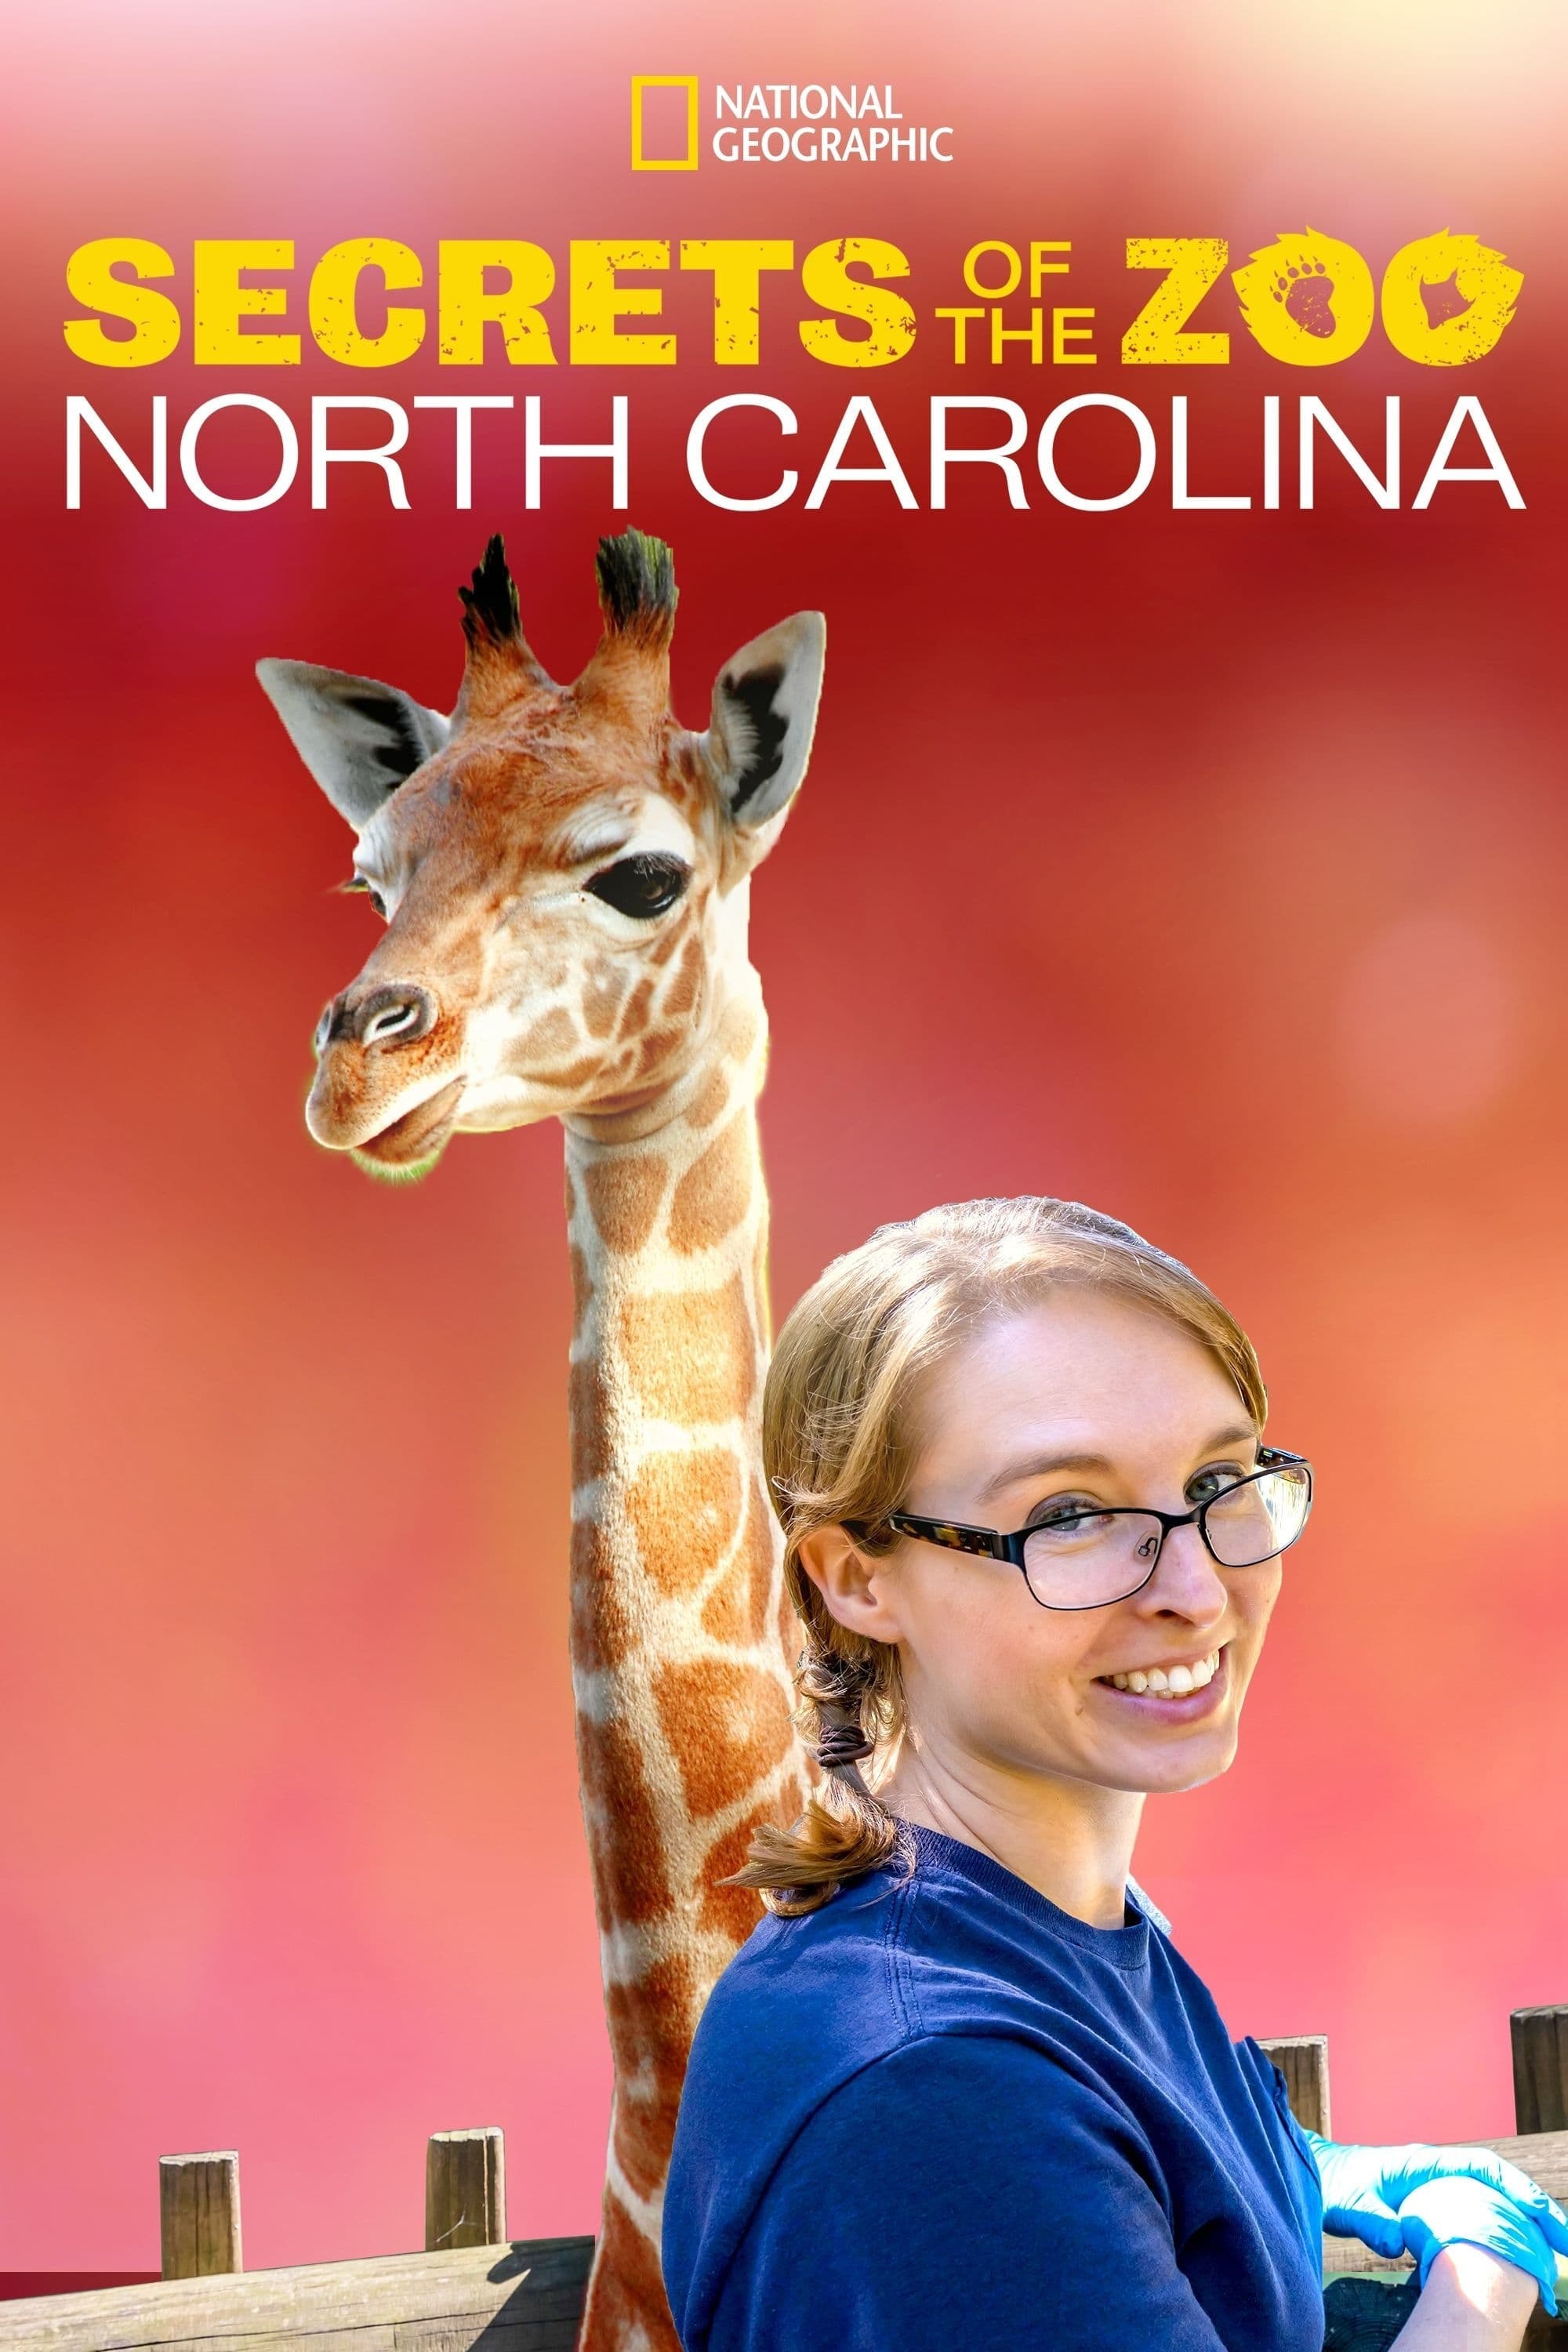 Caratula de Secrets of the Zoo: North Carolina (Los secretos del zoo: Carolina del Norte) 